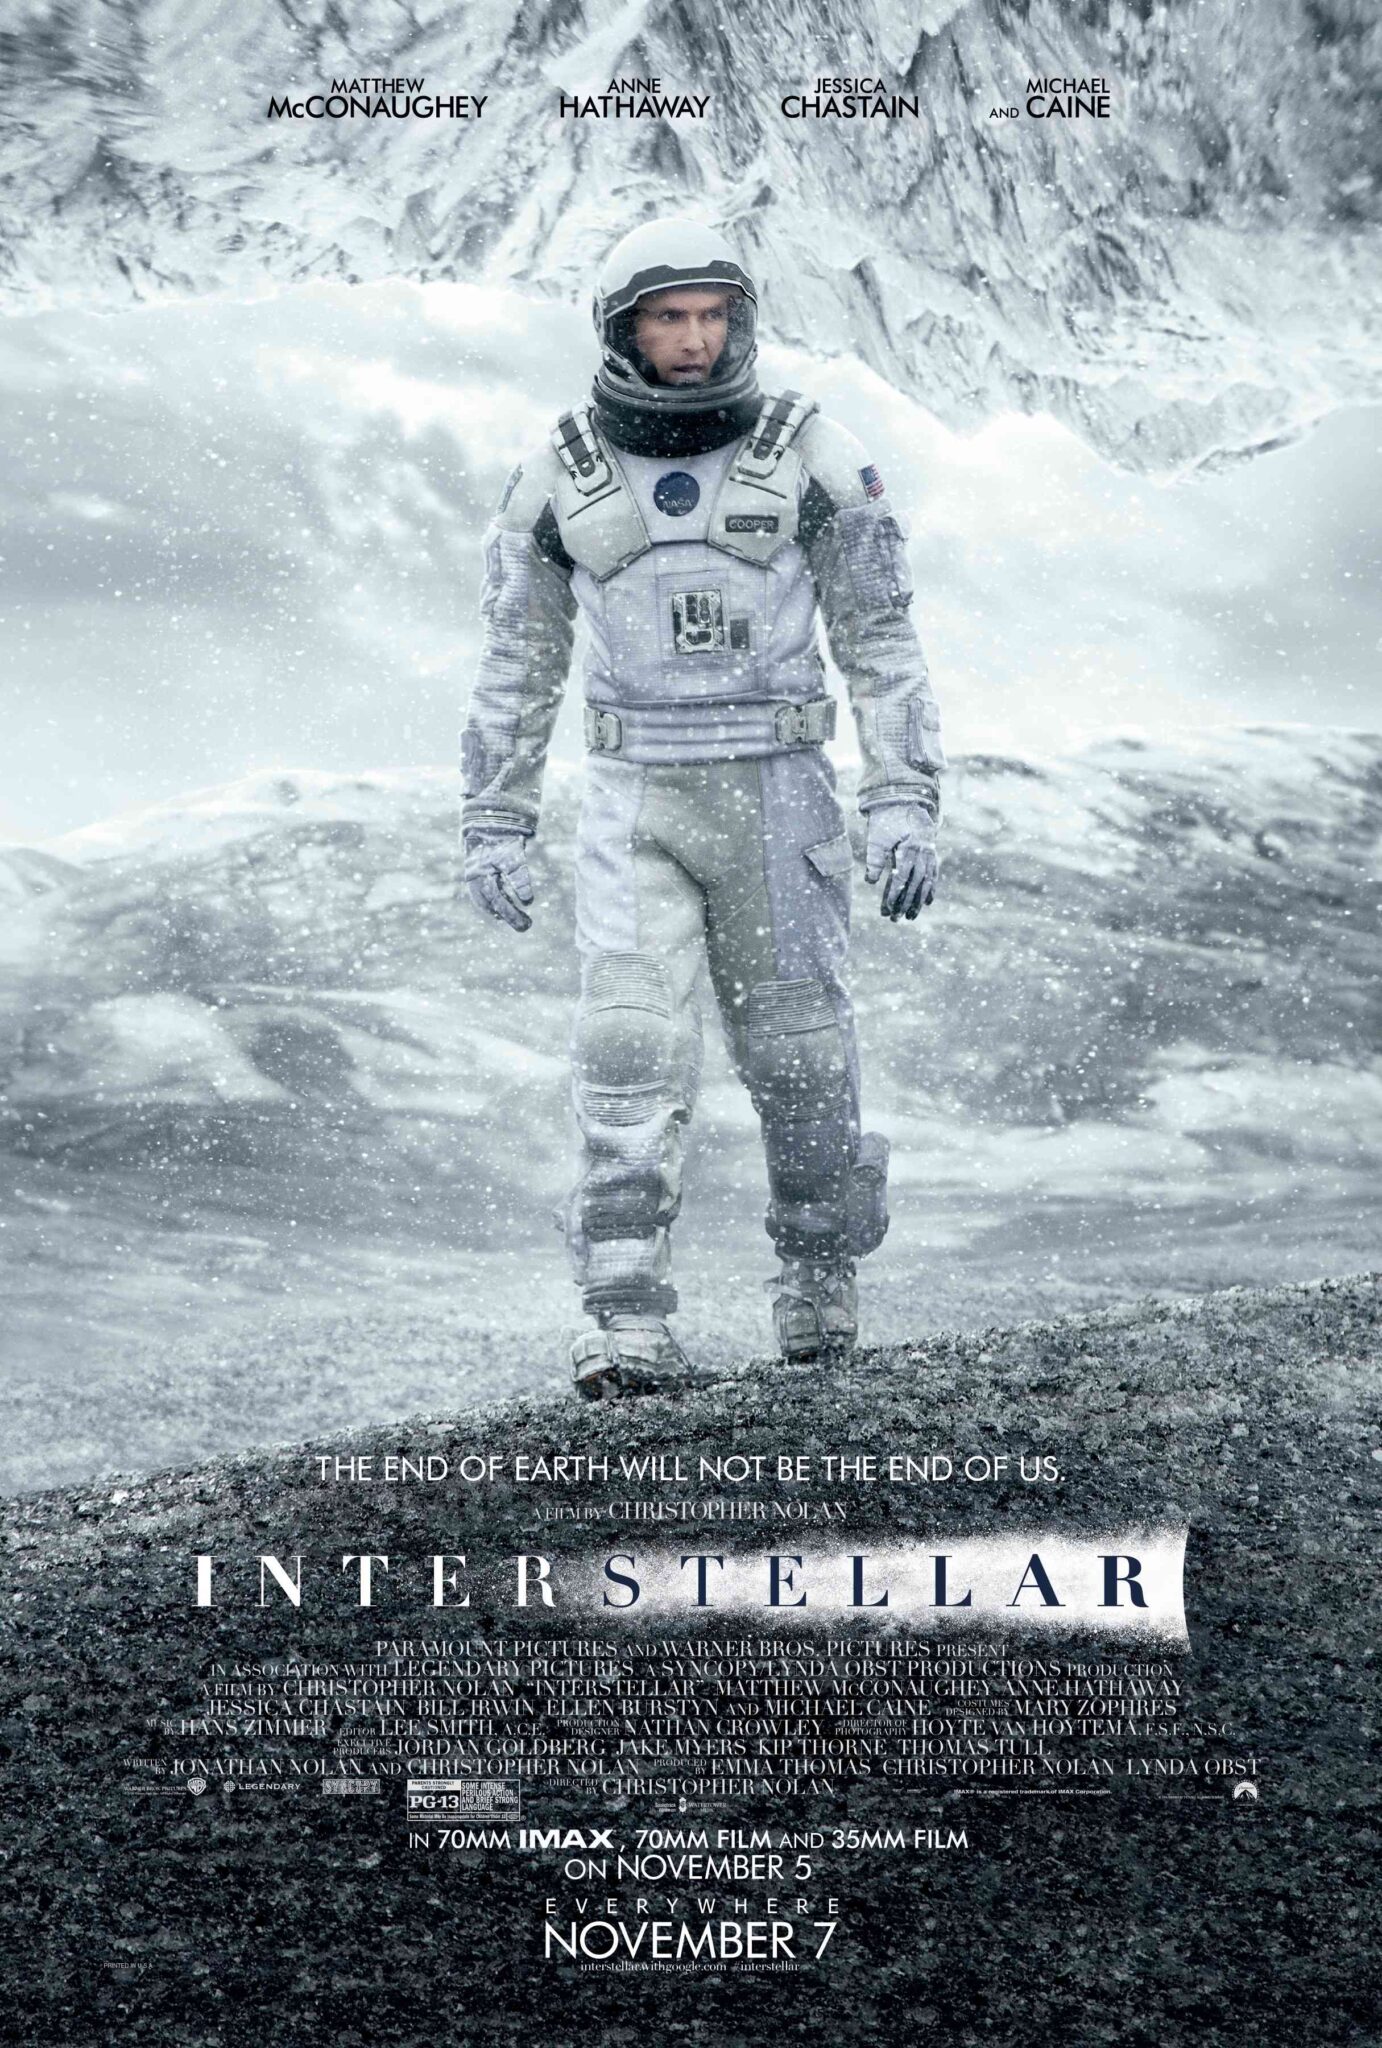 FULL MOVIE: Interstellar (2014)